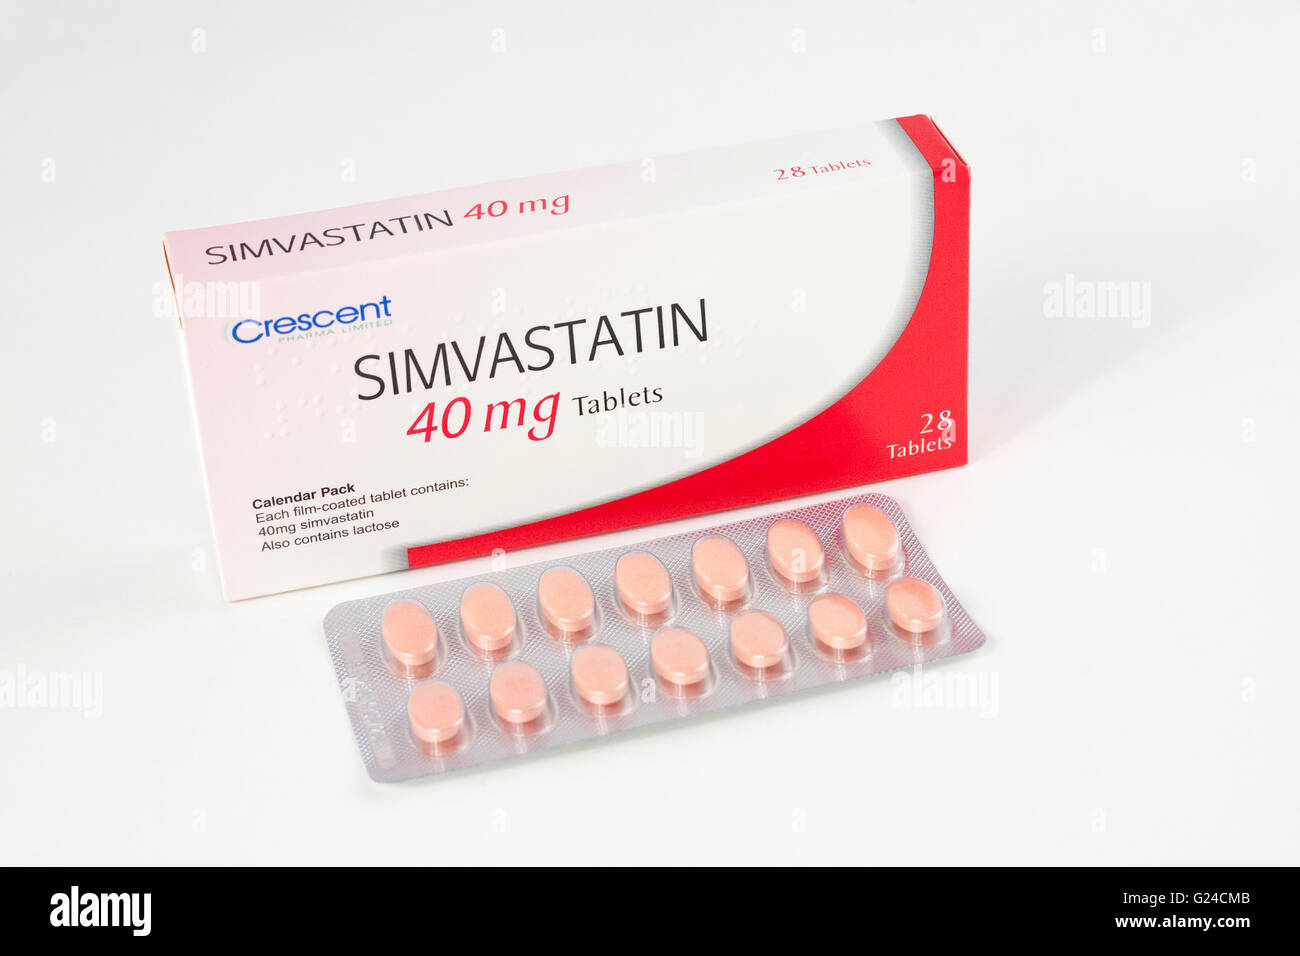 Simvastatin 40mg comprimés pour le traitement de cholestérol élevé qui entraîne l'accumulation de graisse sur les parois des artères Banque D'Images